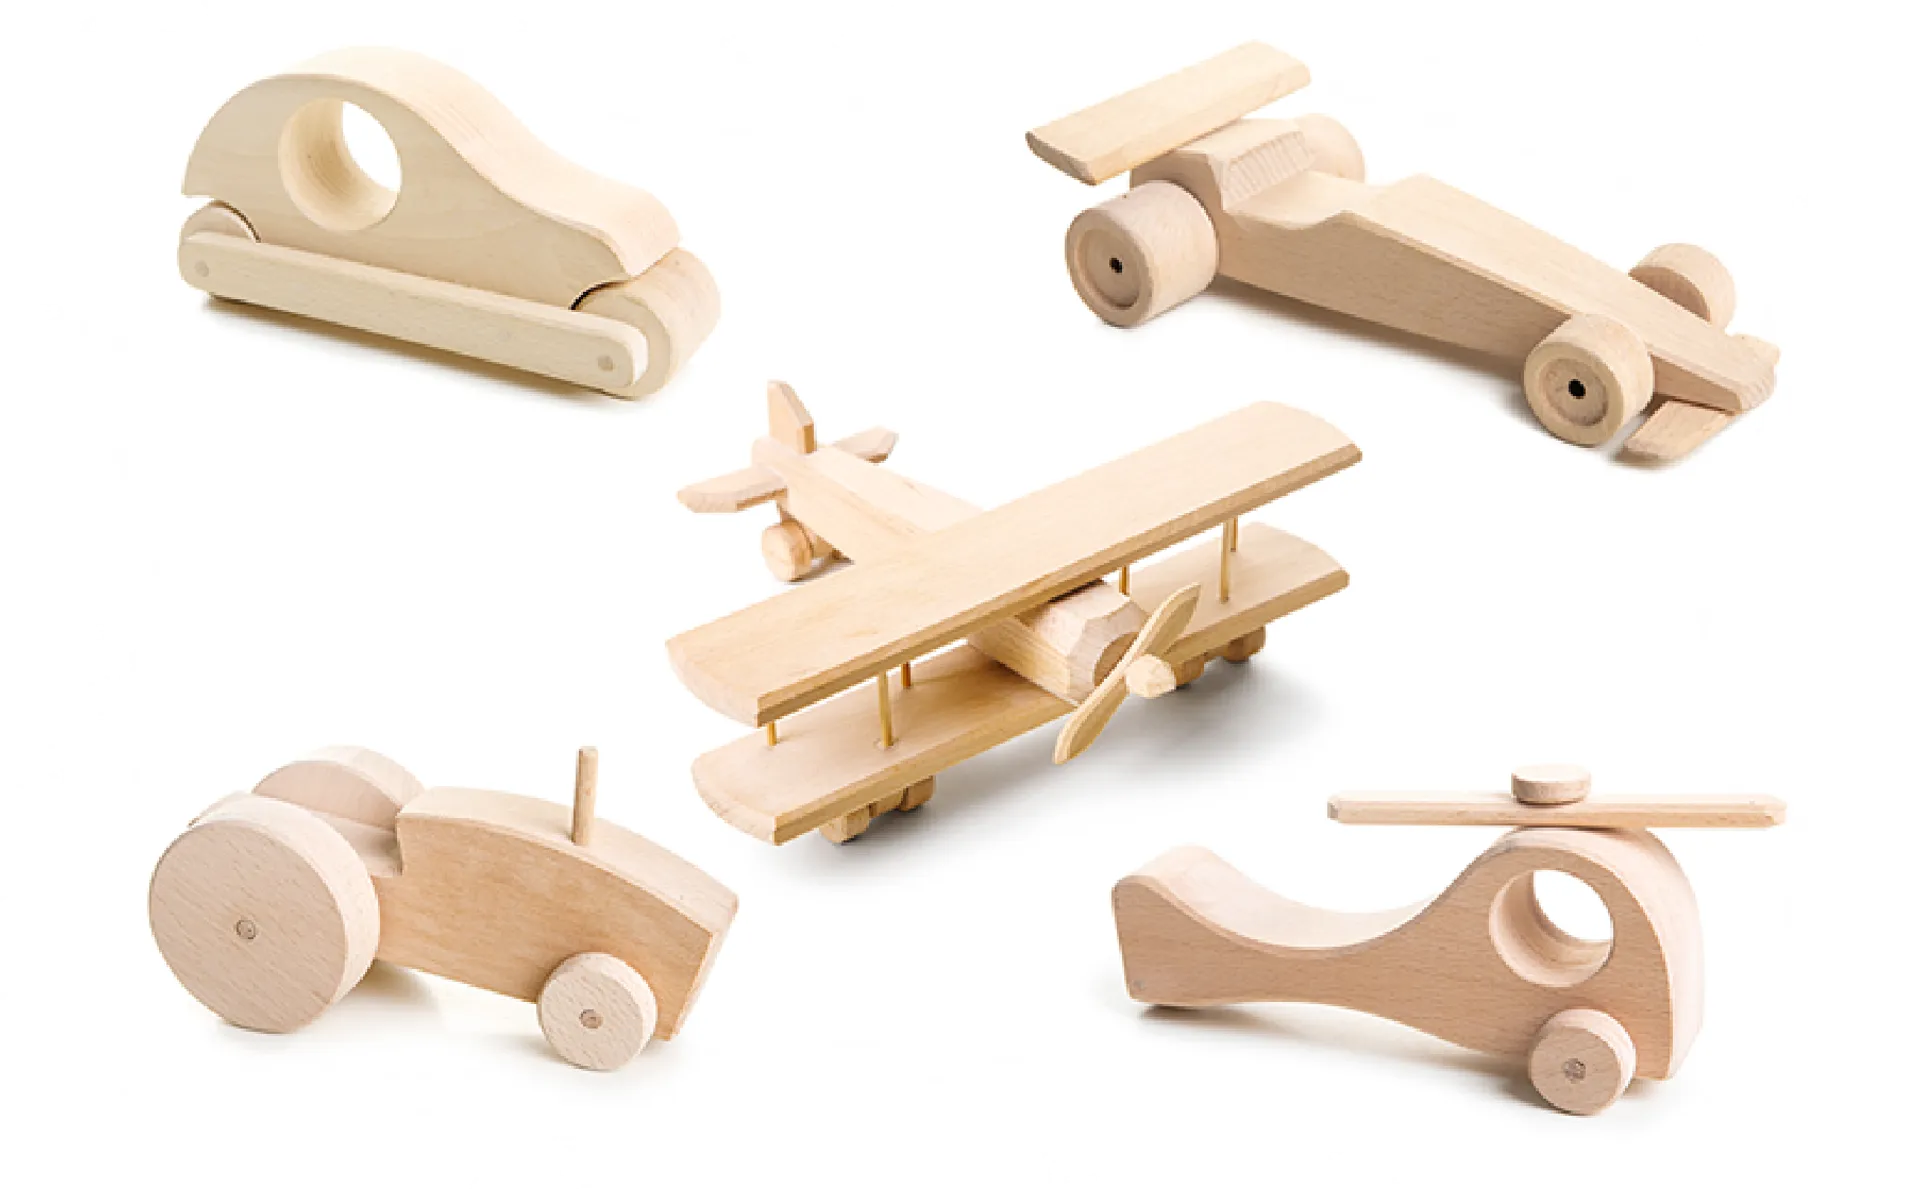 Image de différents jouets représentant des véhicules en bois : une automobile, une voiture de course, un avion, un tracteur et un hélicoptère.